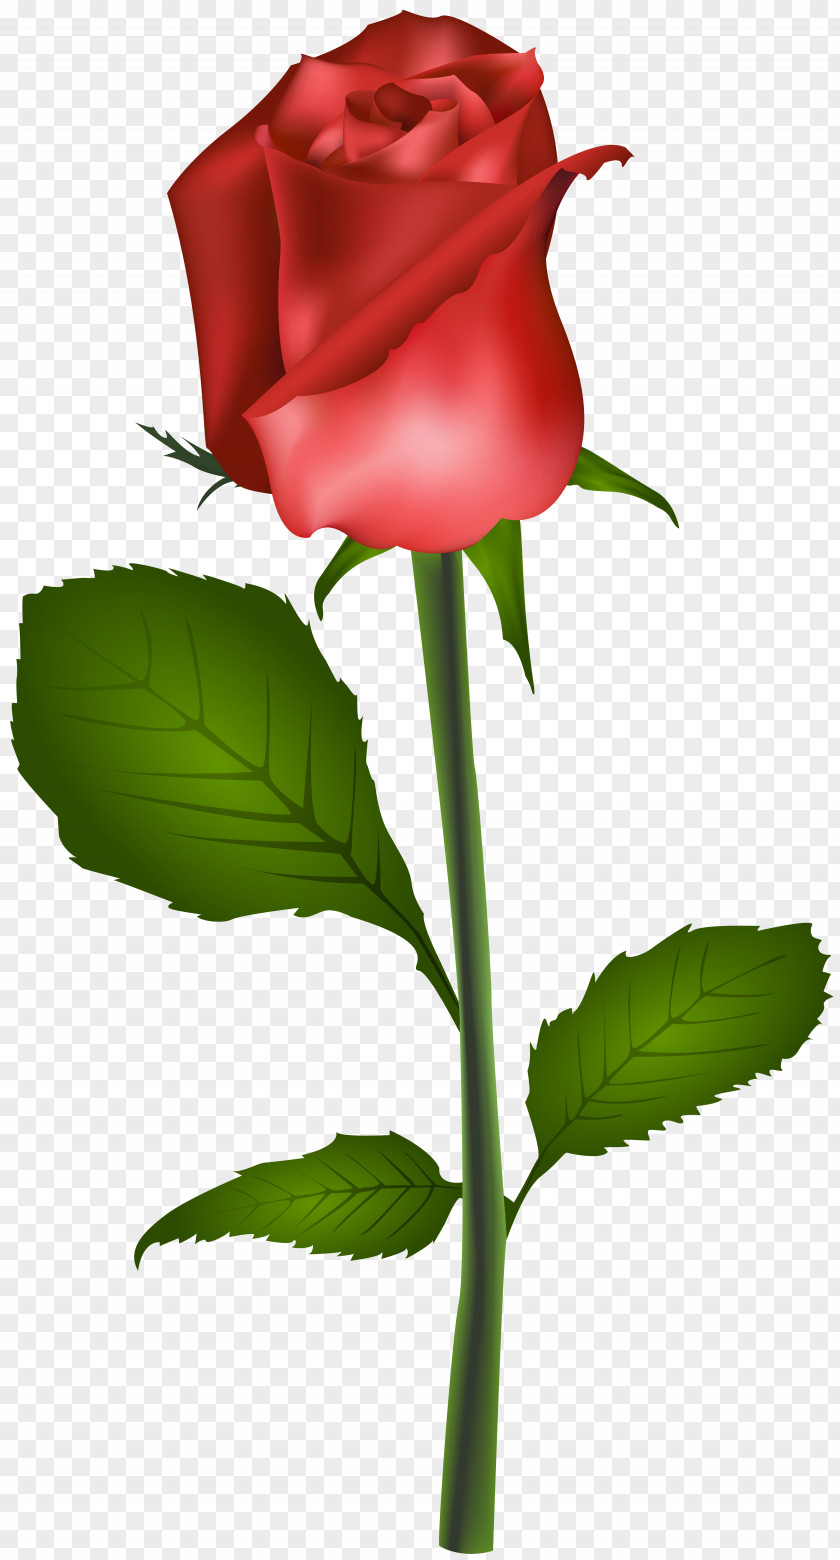 Red Rose Transparent Clip Art Image Flower PNG